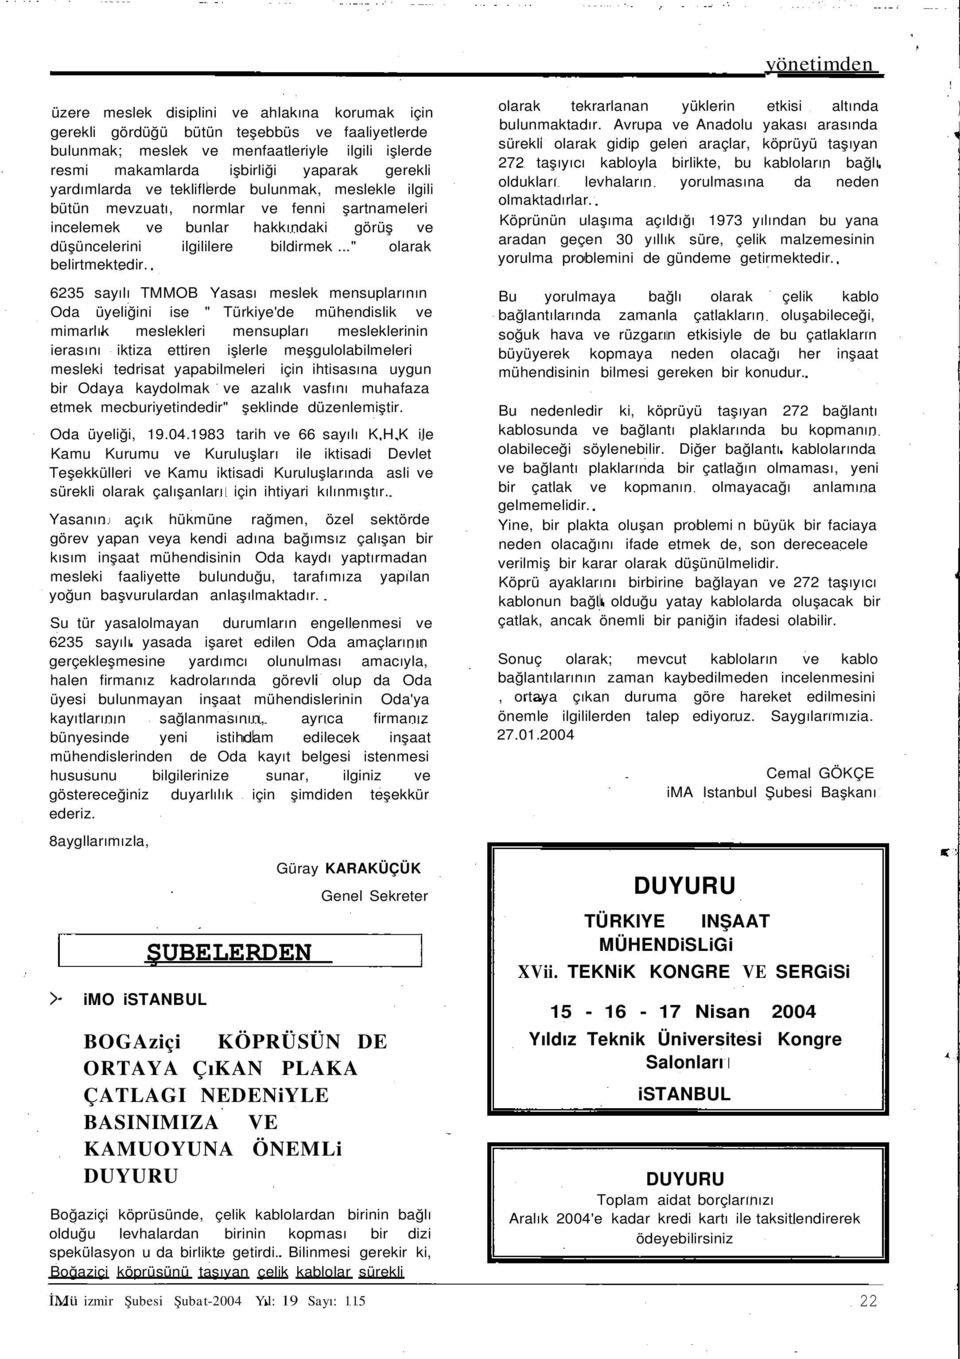 6235 sayılı TMMOB Yasası meslek mensuplarının Oda üyeliğini ise " Türkiye'de mühendislik ve mimarlık meslekleri mensupları mesleklerinin ierasını iktiza ettiren işlerle meşgulolabilmeleri mesleki